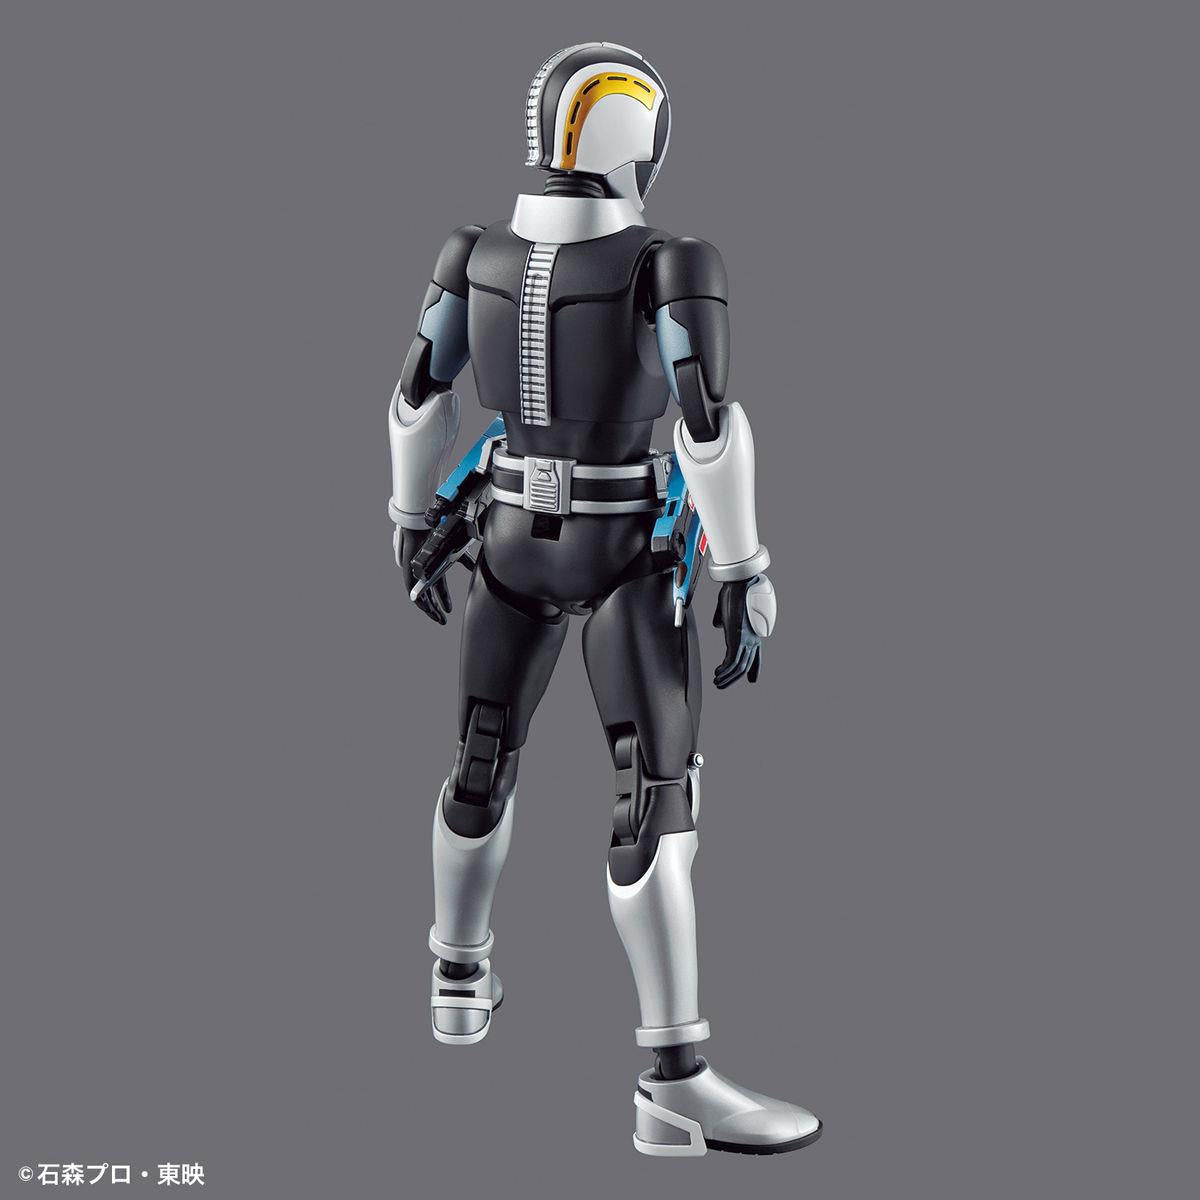 Kamen Rider: Masked Rider Den-O (Sword Form & Plat Form) Figure-rise Standard Model